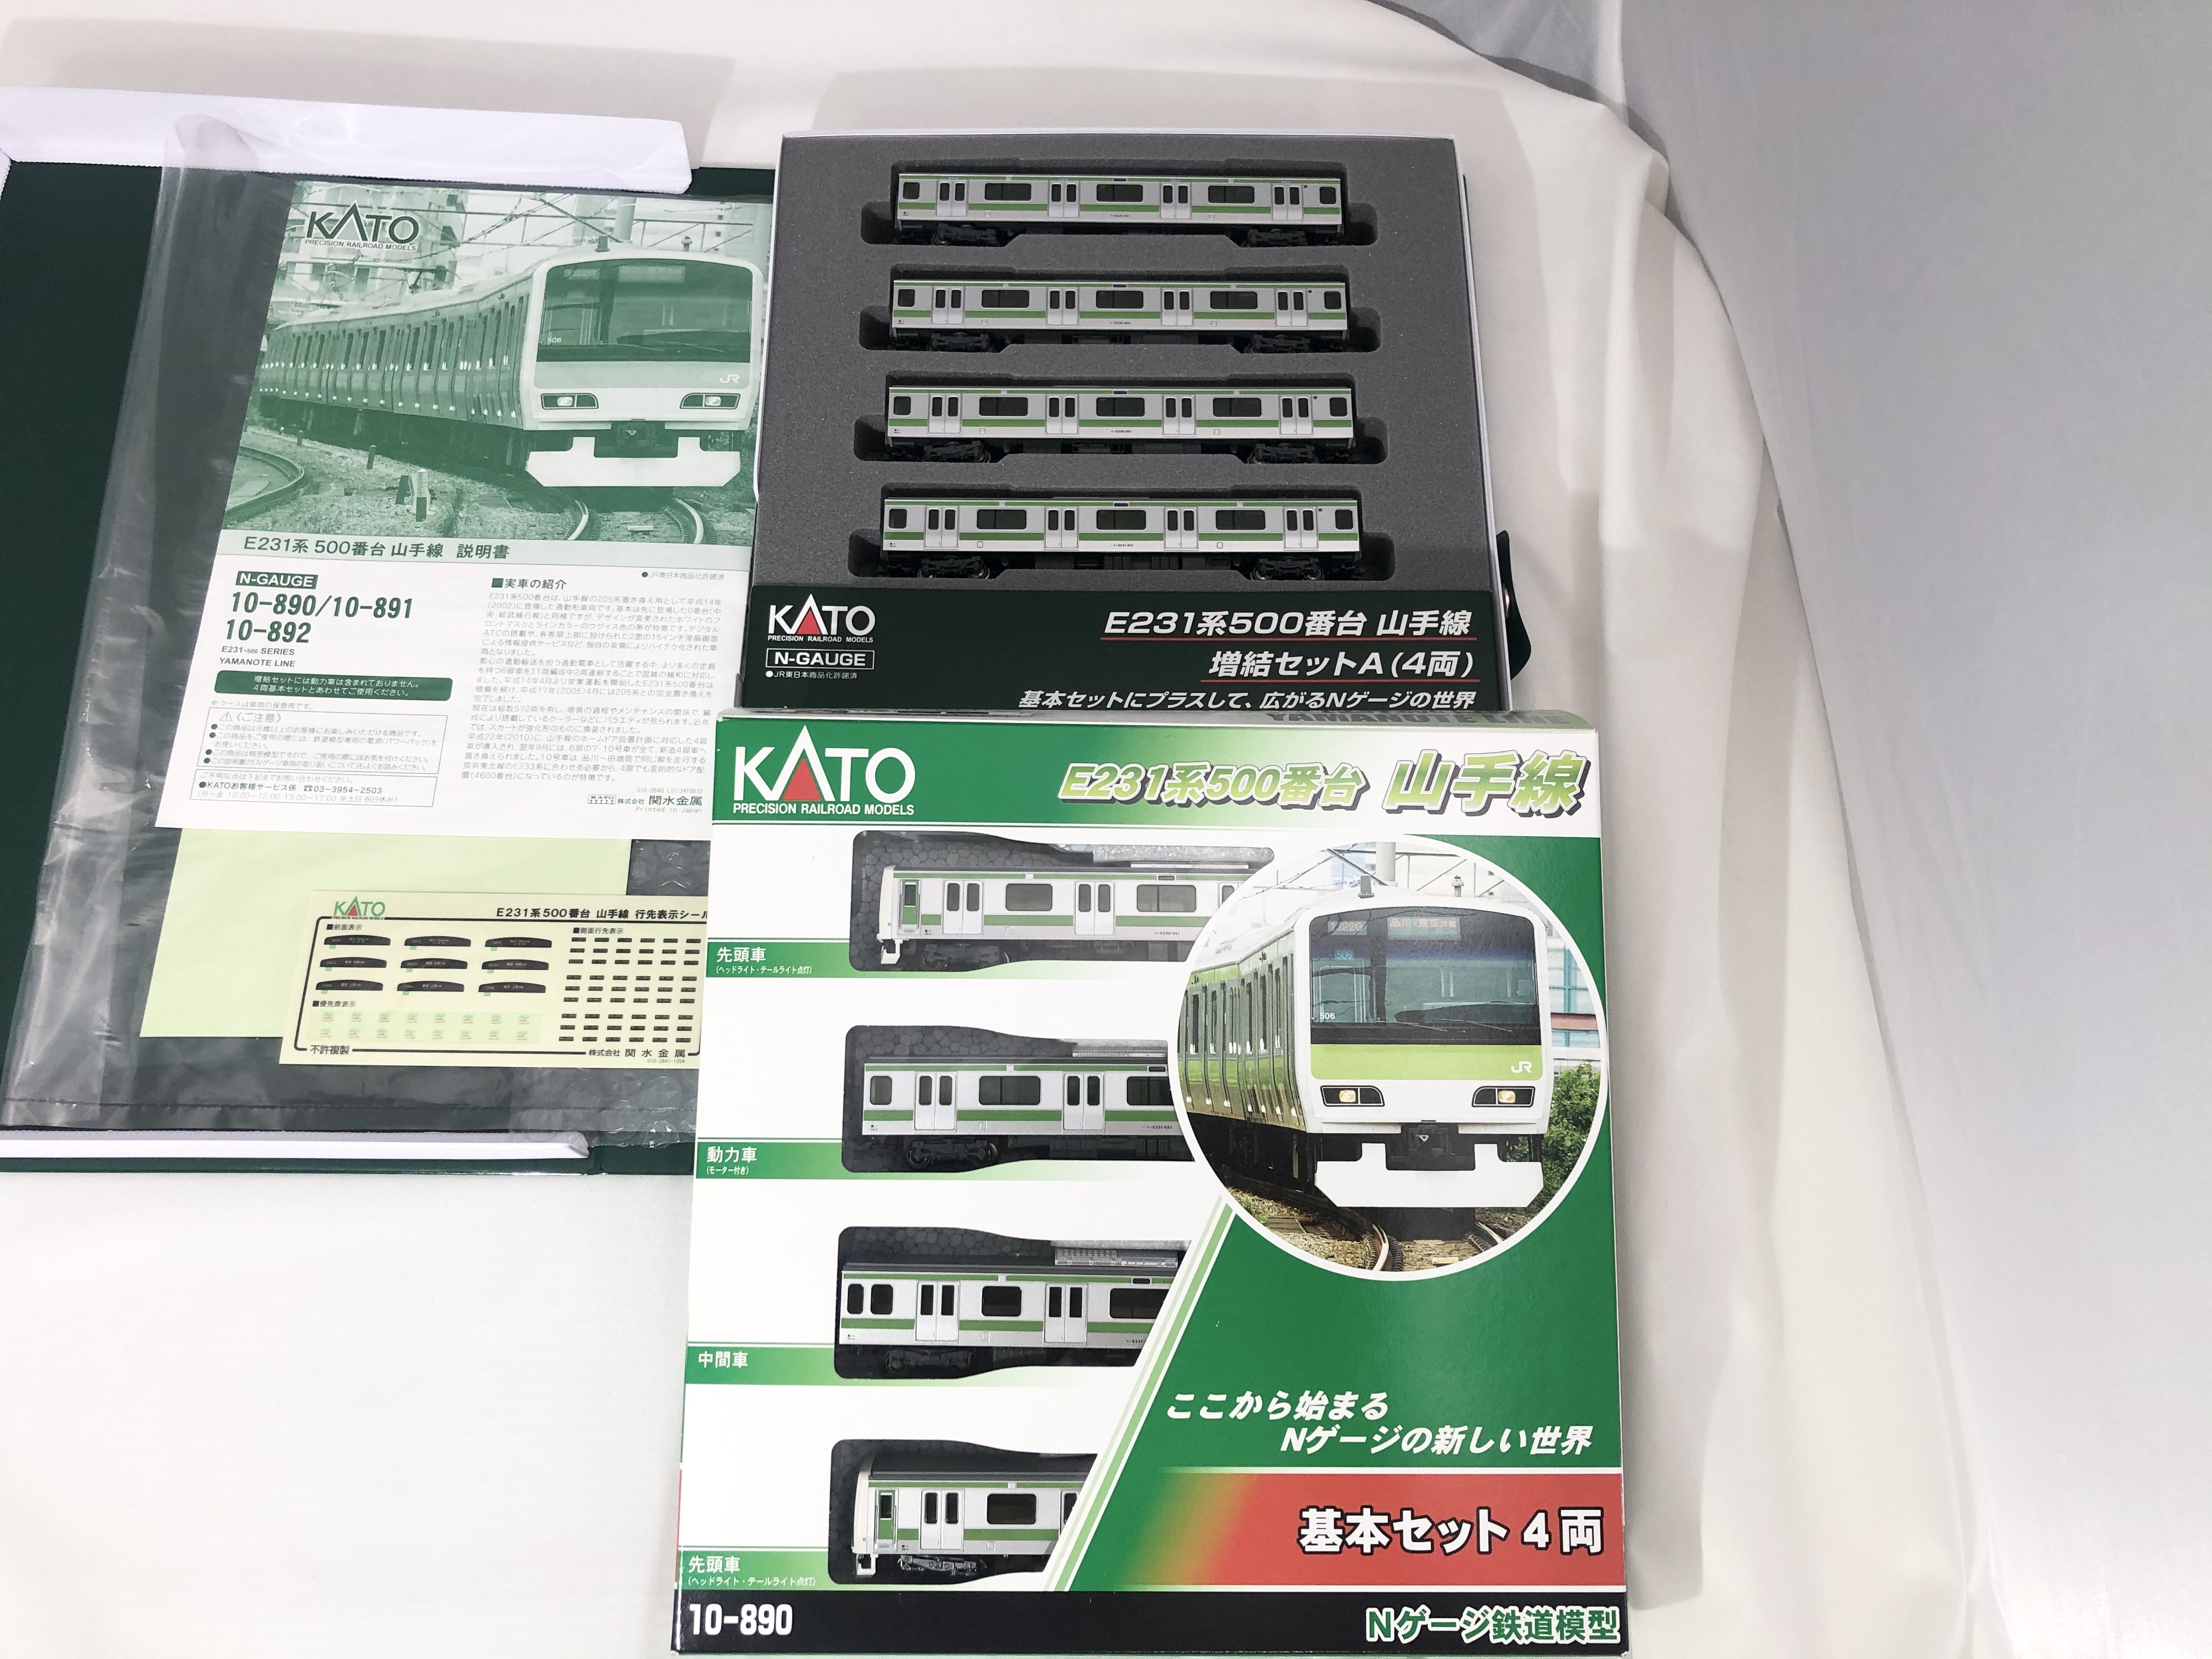 KATO 鉄道模型 Nゲージ E231系 500番台 山手線 8両セット 10-890 / 10